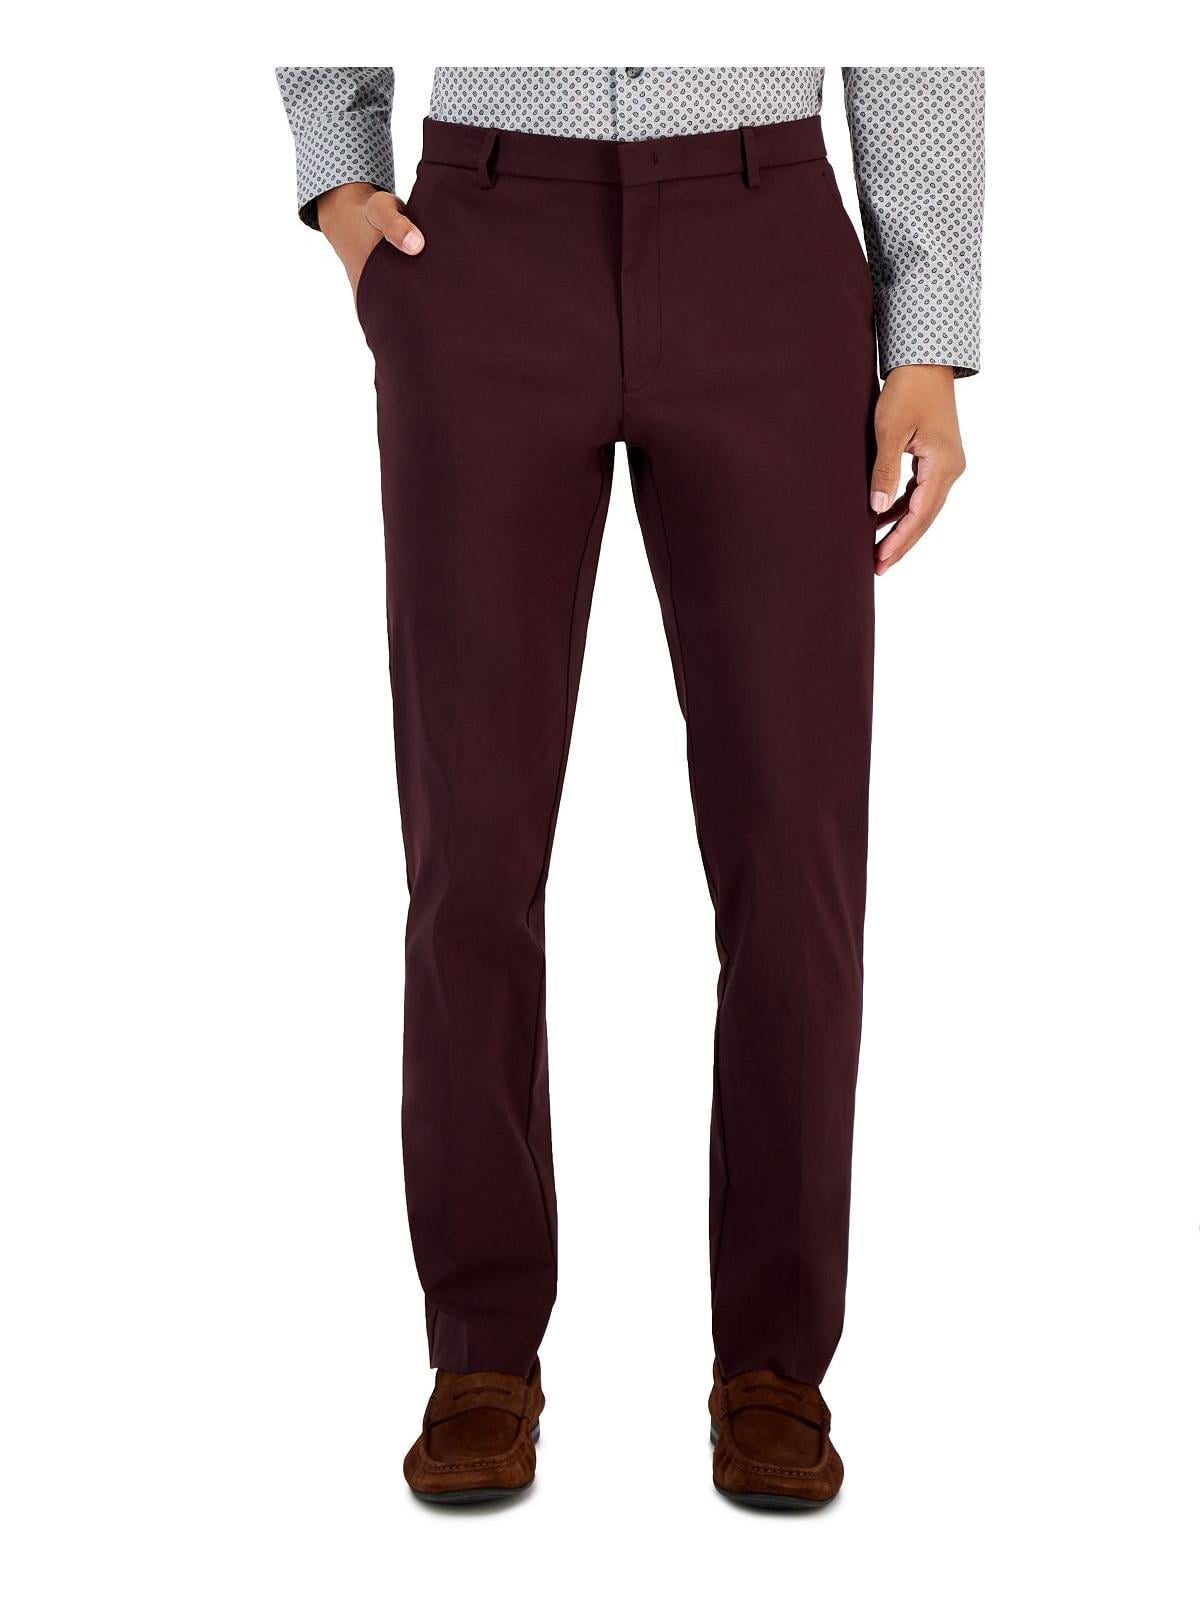 Tommy Hilfiger Mens Modern Fit Easy Care Dress Pants - Walmart.com